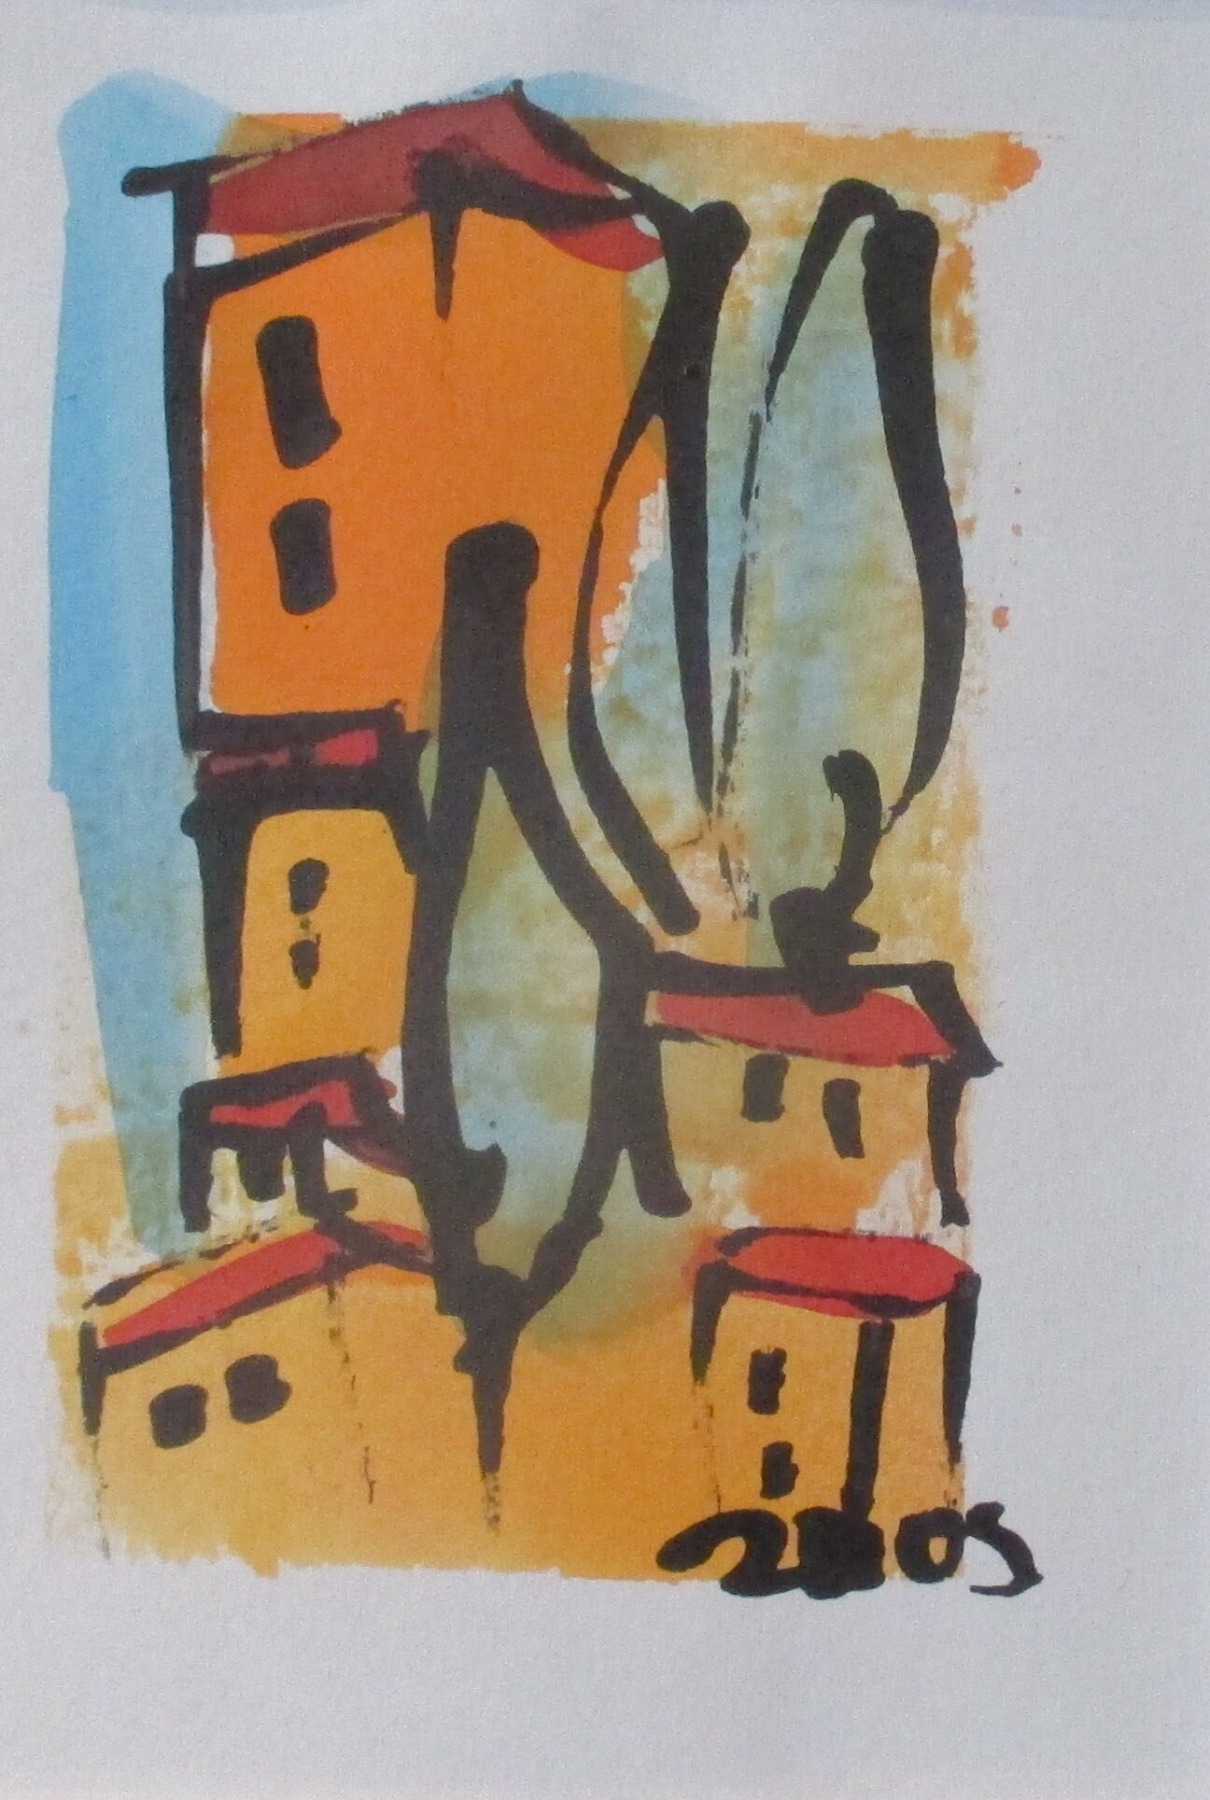 kleine Toscana Landschaften Original Zeichnung auf Künstlerpapier 18x24cm in PP mit Bambusfeder -